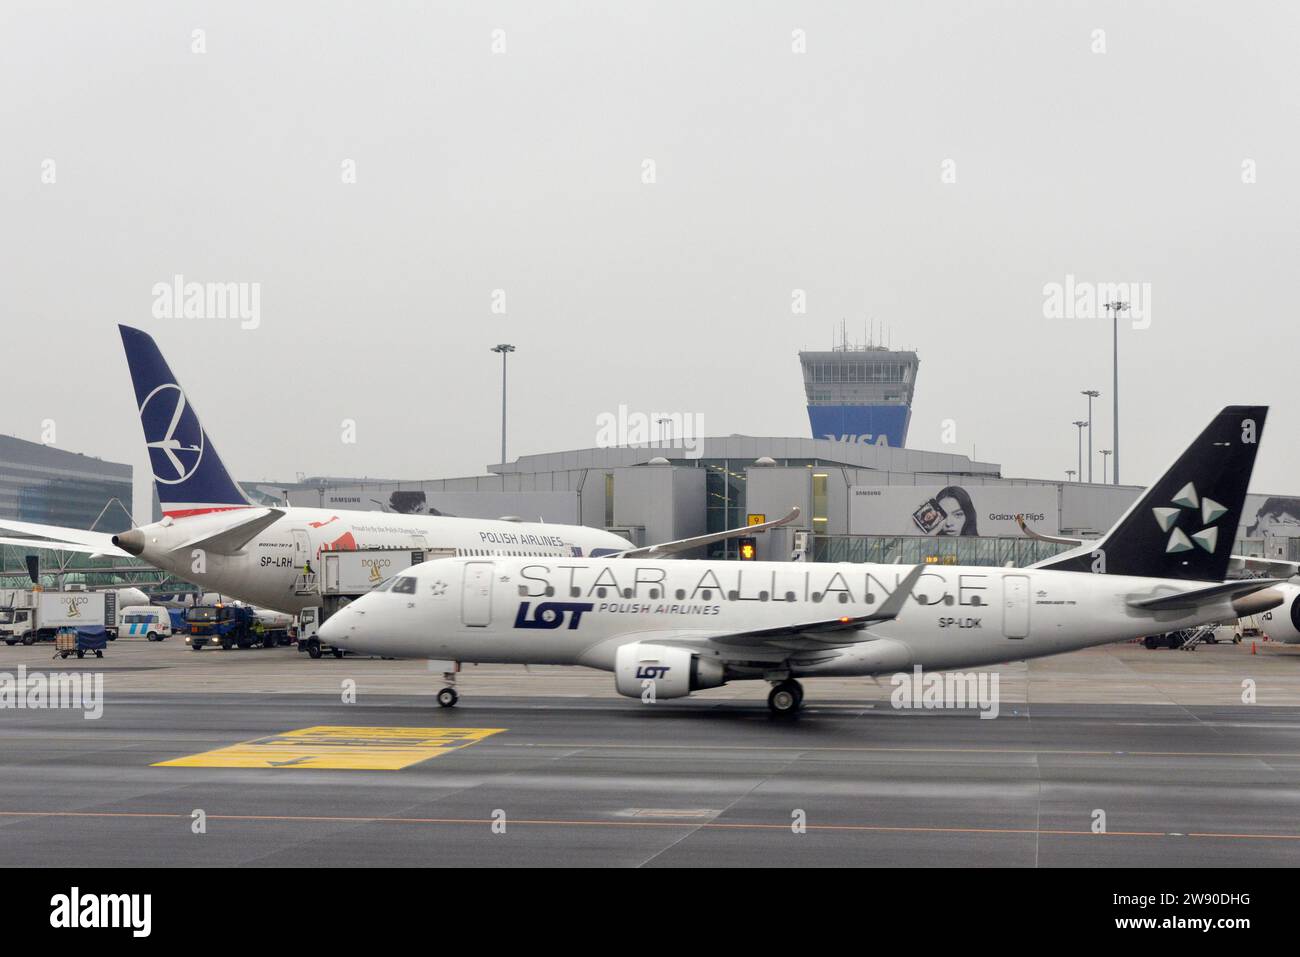 Embraer 170/175 - MSN 74 exploité par Star Alliance à l'aire de trafic de l'aéroport de Varsovie ou sur le tarmac vue générale des avions de la compagnie aérienne polonaise LOT par temps nuageux Banque D'Images